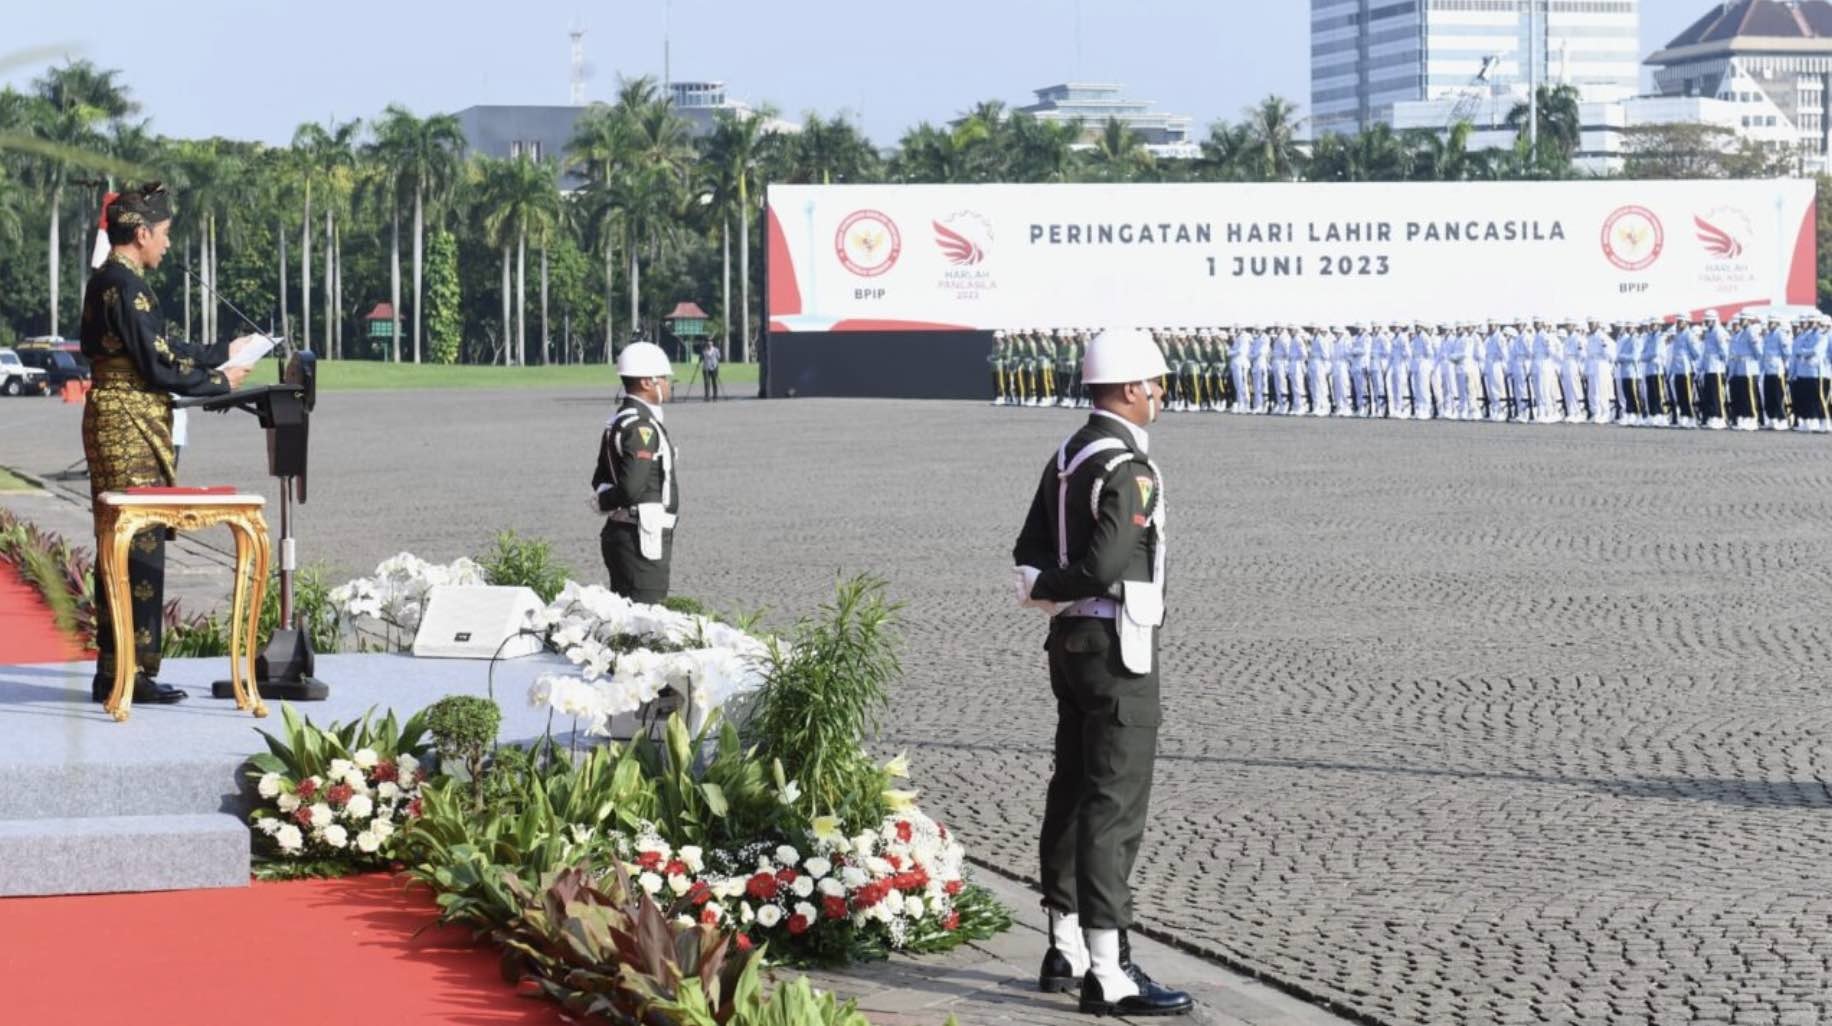 Presiden: Pancasila Fondasi Indonesia Berhasil Hadapi Krisis Global